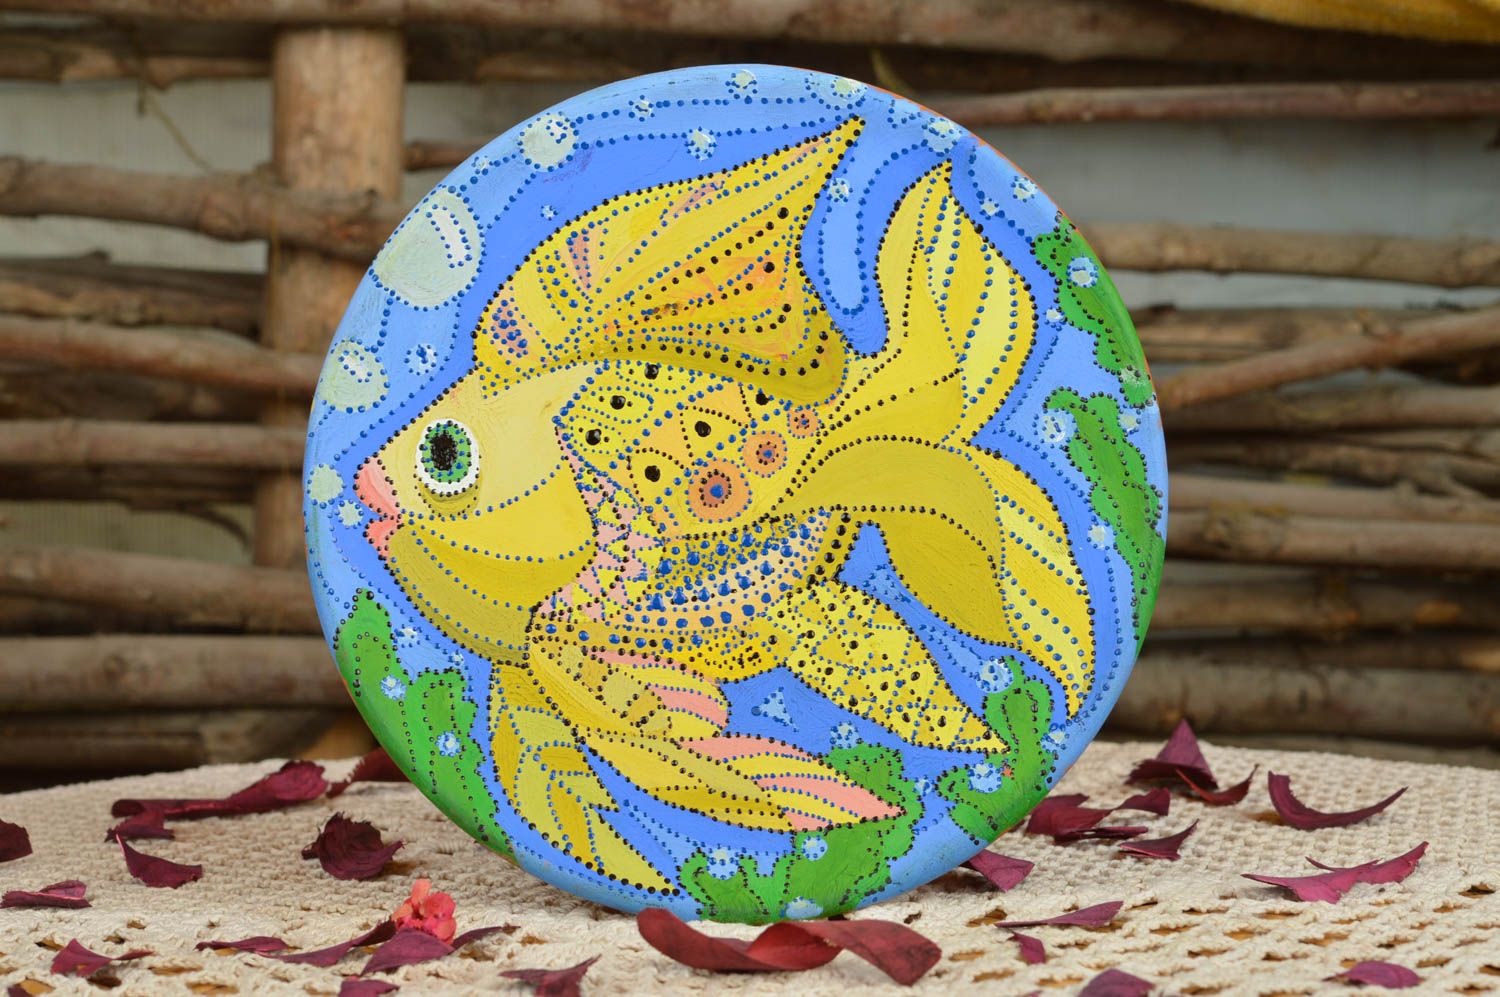 Plato de cerámica pintado con acrílicos decorativo hermoso hecho a mano pez  foto 1